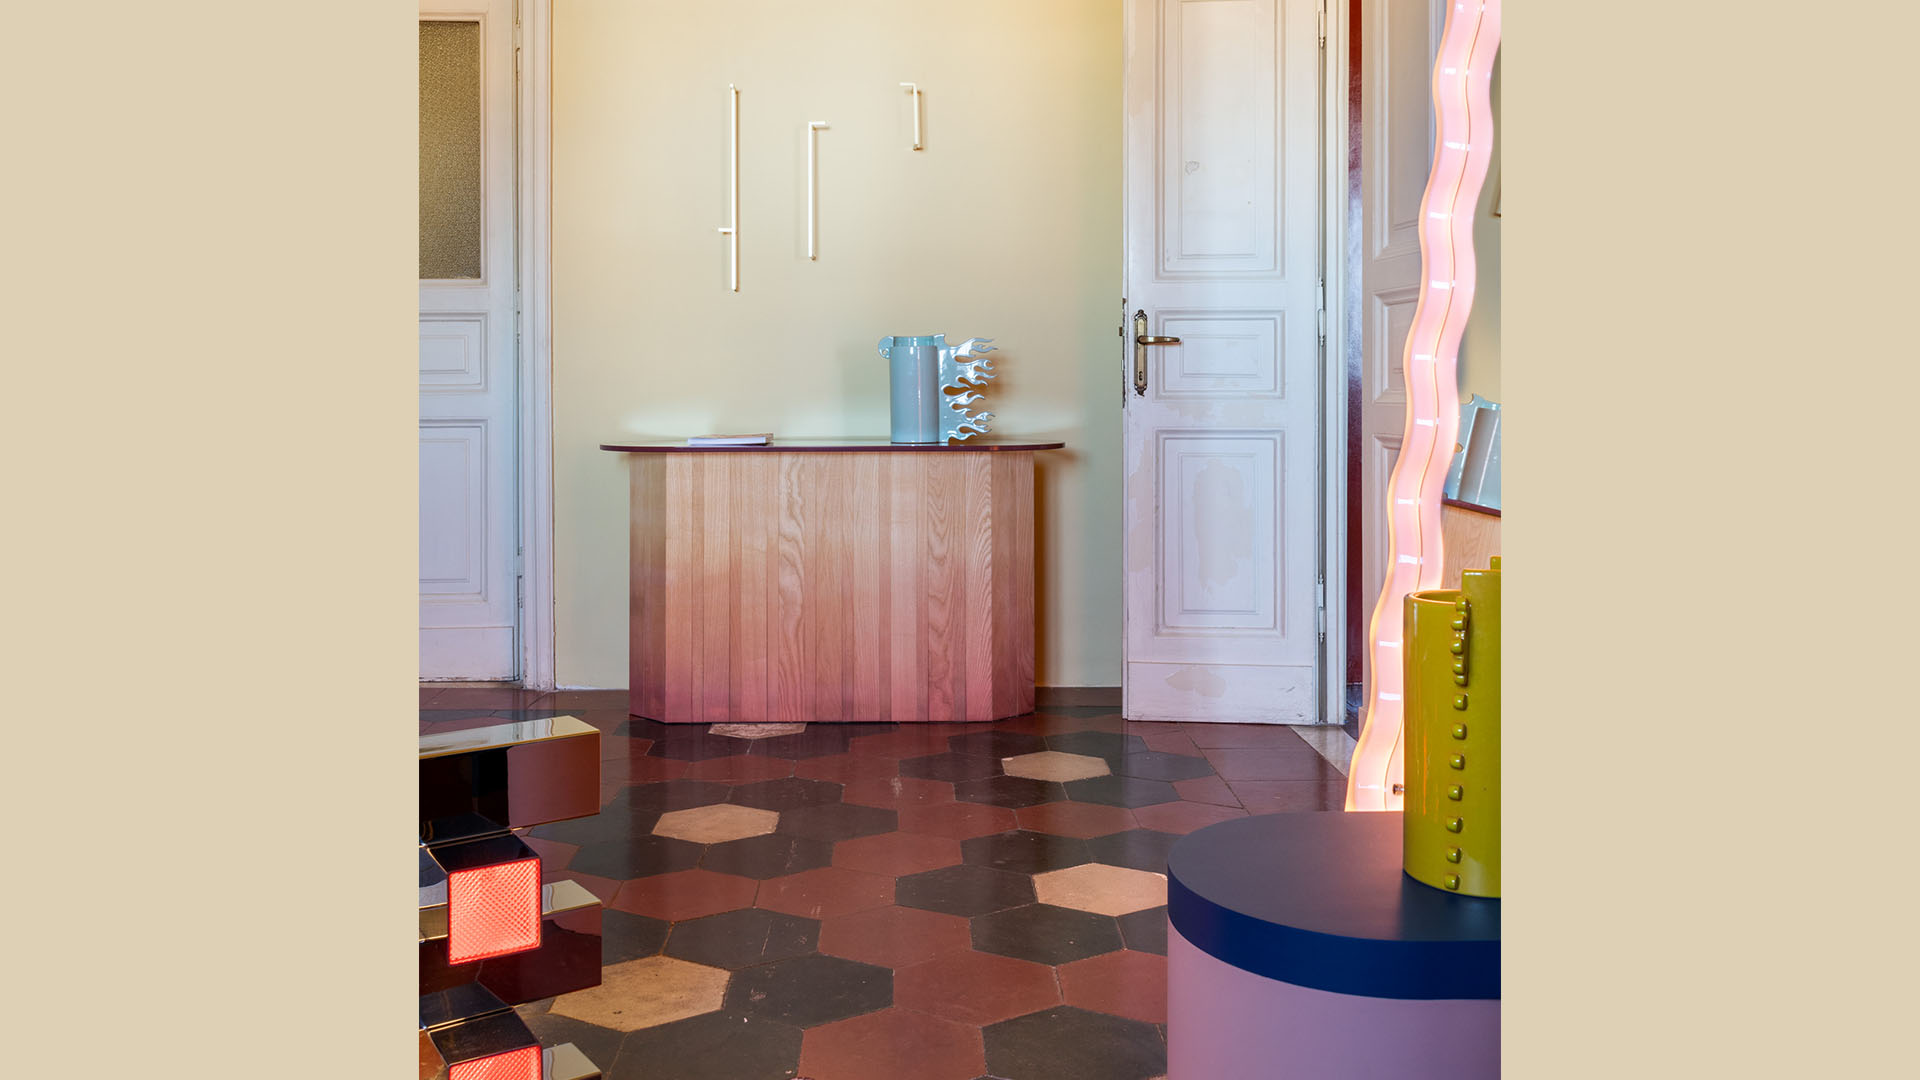 Draga & Aurel help piece Apartamento exhibition by Contemporary Cluster at the Palazzo